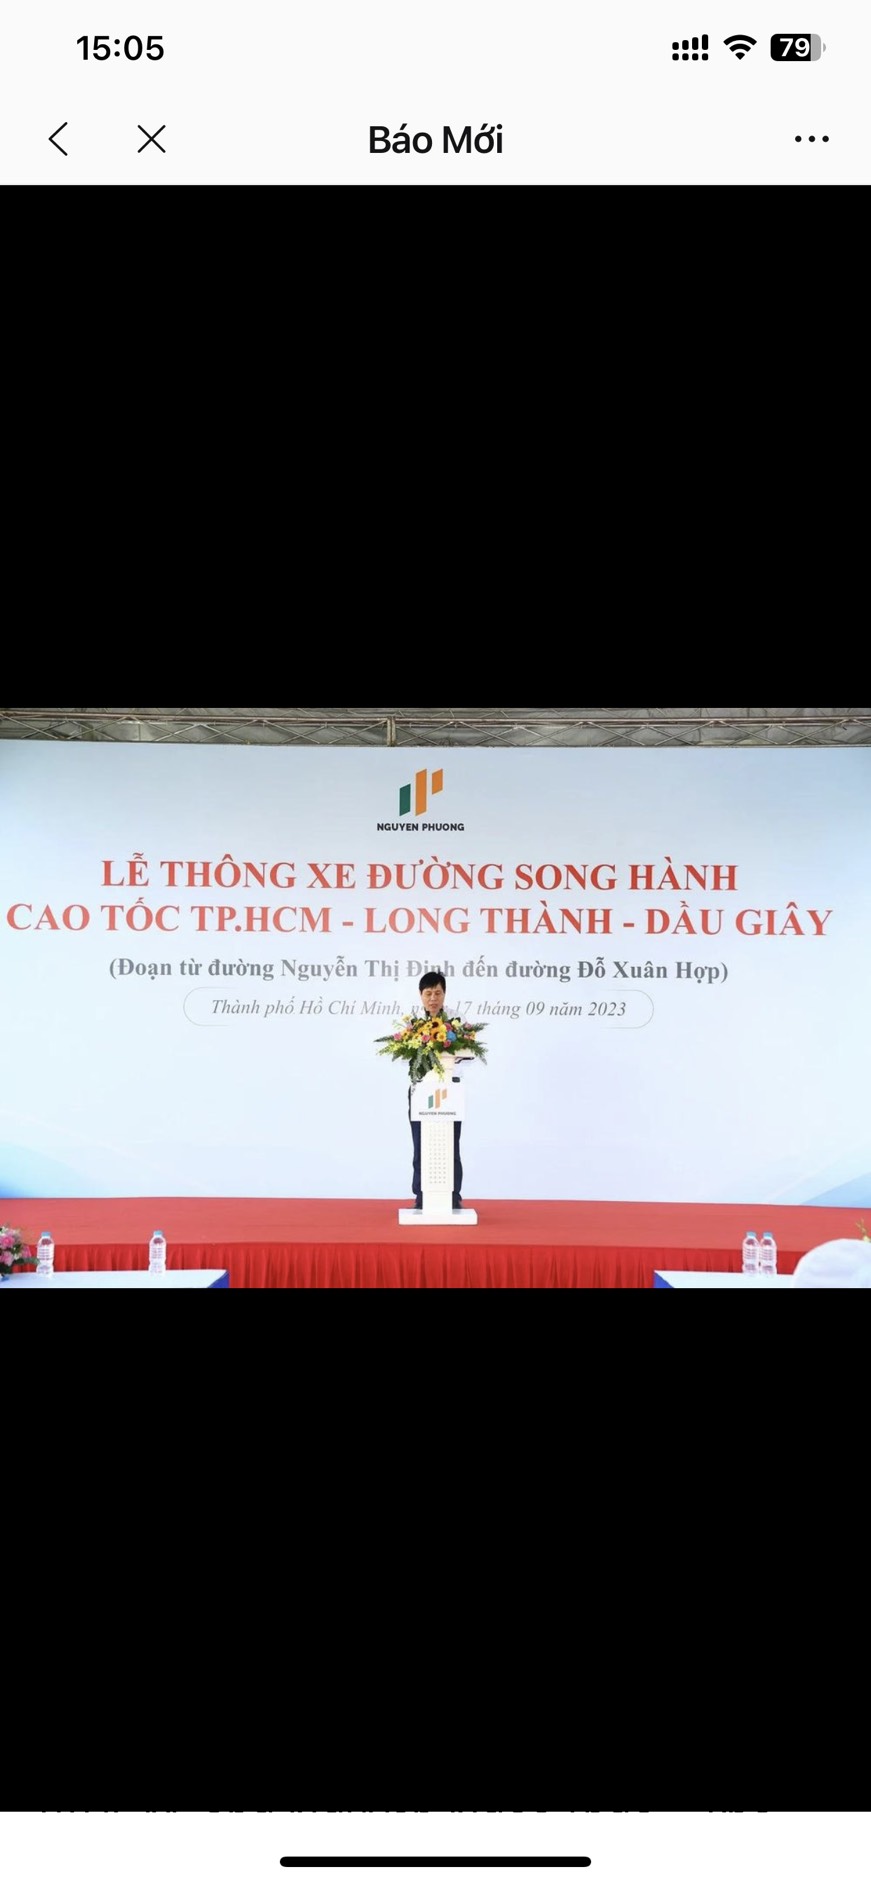 LỄ THÔNG XE ĐƯỜNG SONG HÀNH CAO TỐC TP.HCM - LONG THÀNH - DẦU GIÂY